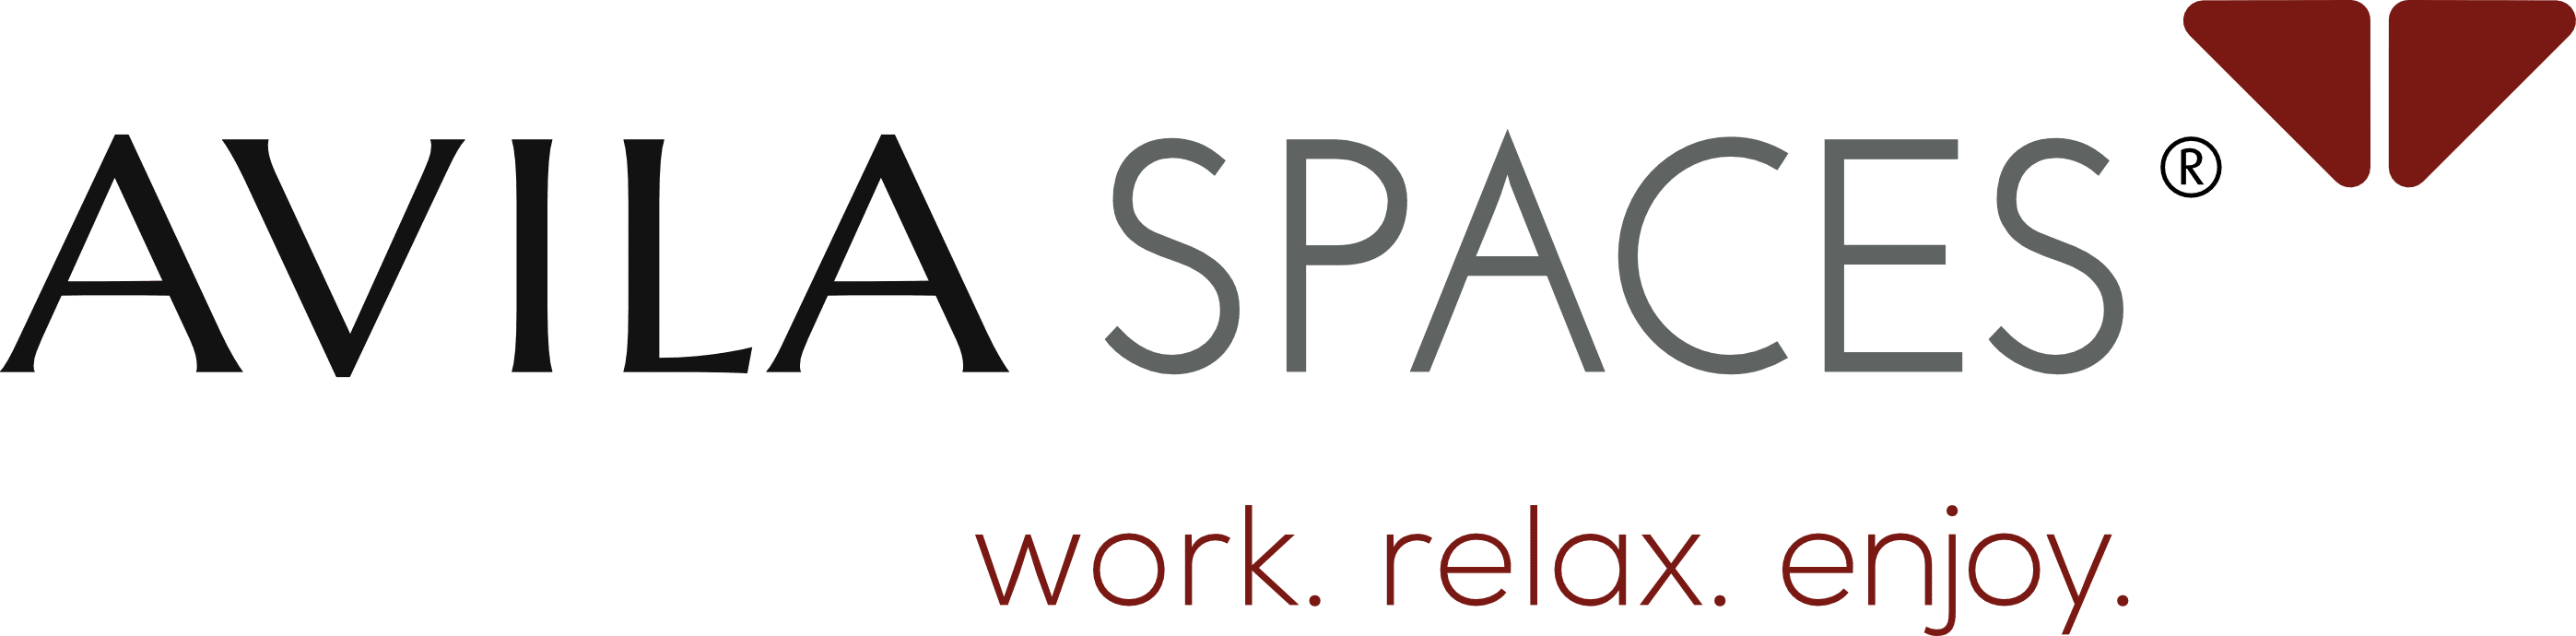 avila spaces partner logo